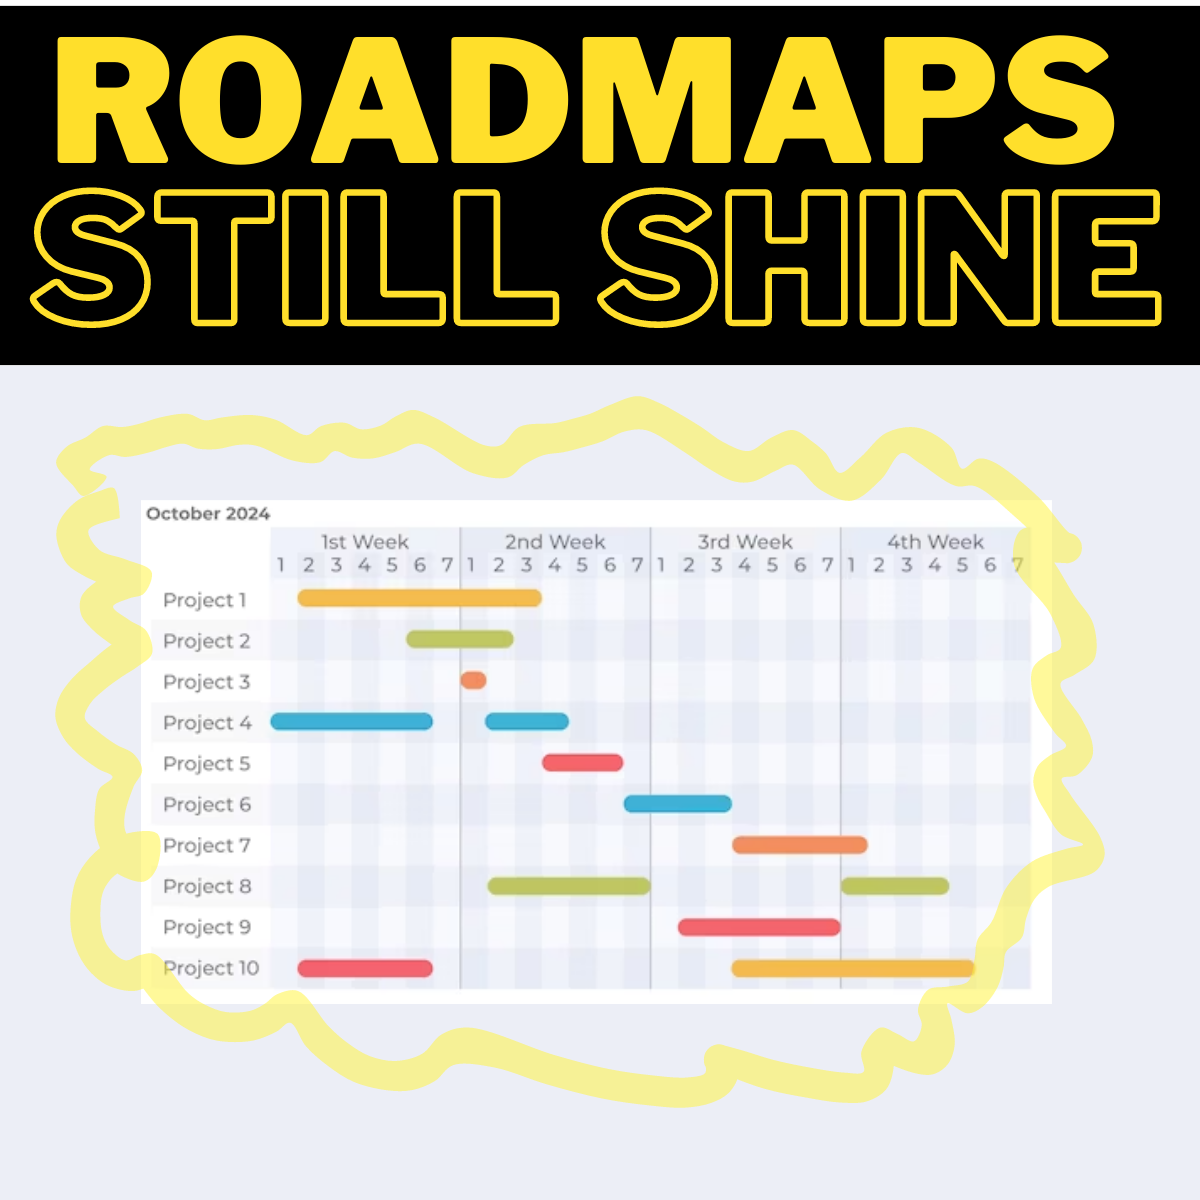 Roadmaps are not dead!